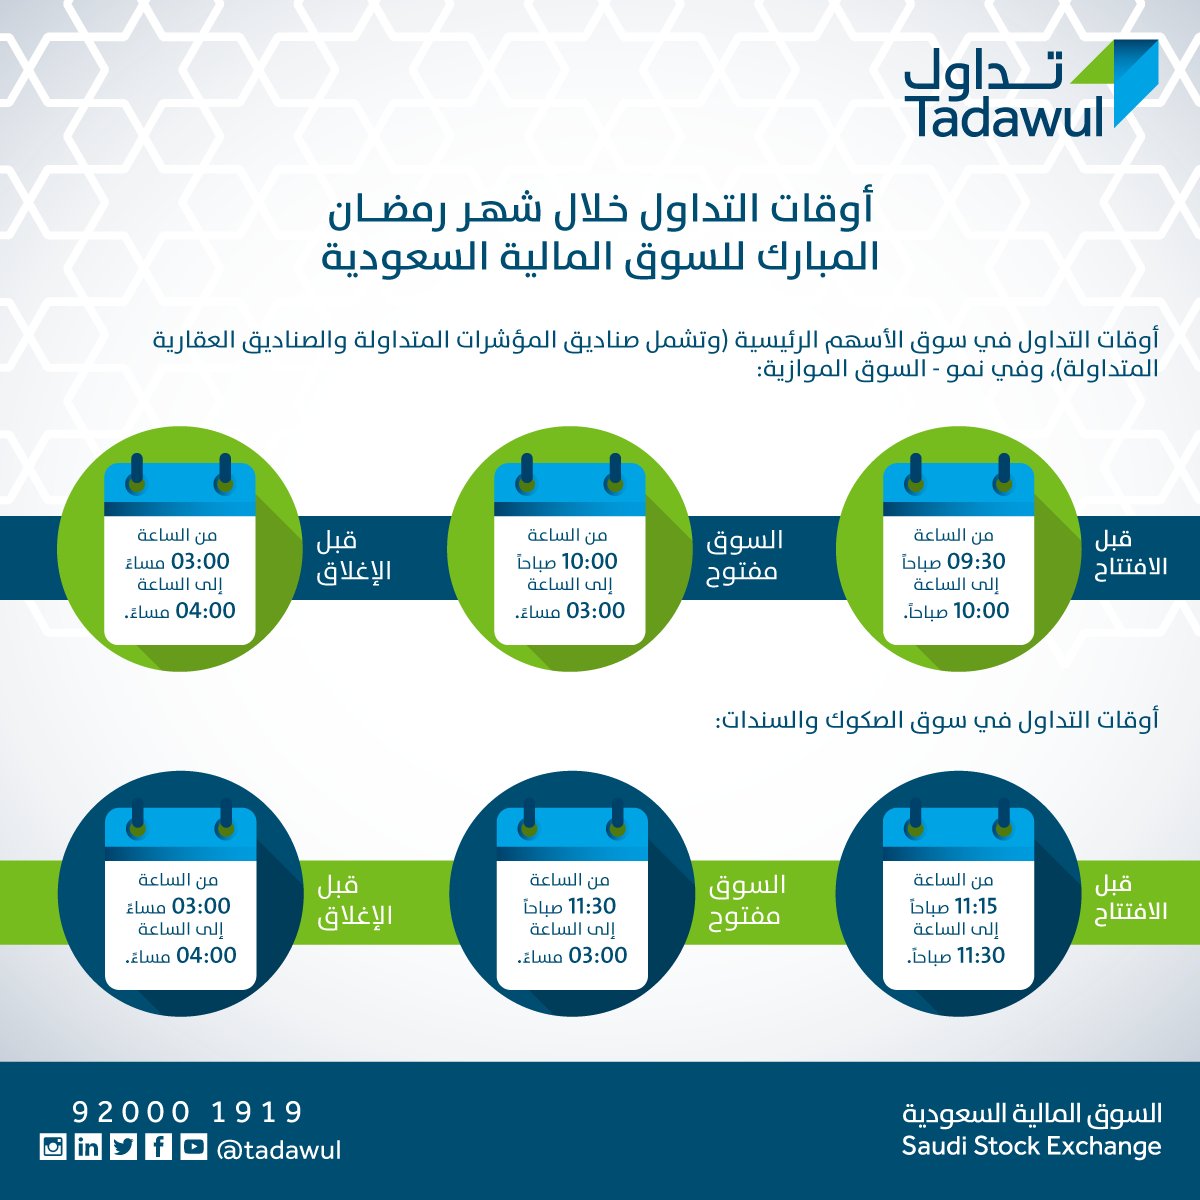 أوقات التداول في رمضان وموعد الدوام الرسمي الرمضاني في قطاع المال في السعودية